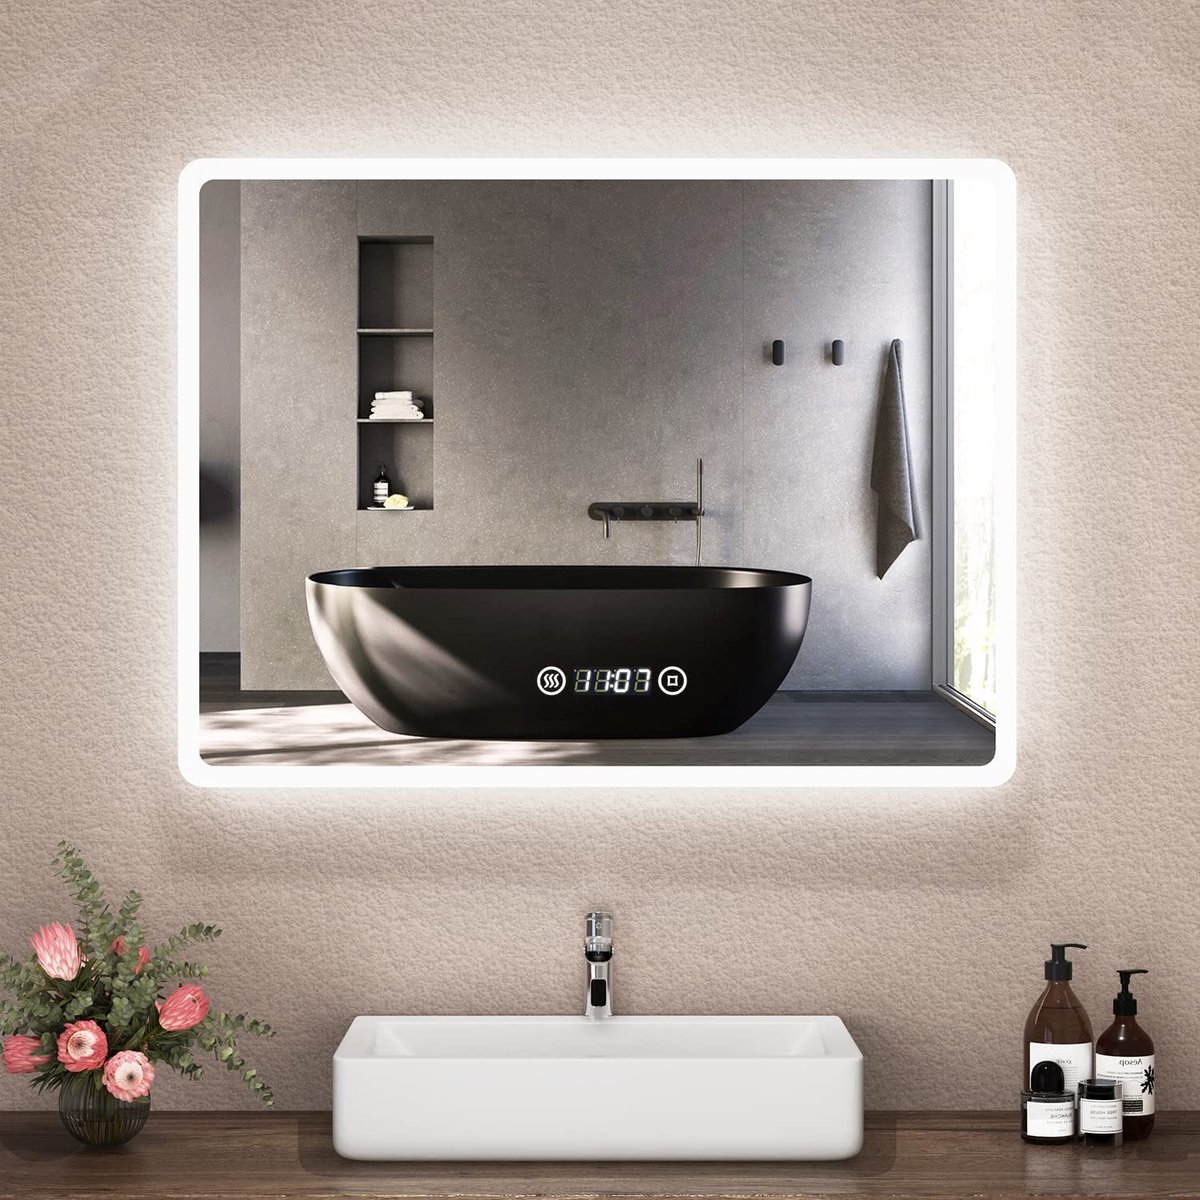 LED-badkamerspiegel- LED-badkamerspiegel met klok-80 x 60 cm -badkamerspiegel met verlichting -Badkamer wandspiegel -6500 K-koud wit -lichtspiegel met aanraakschakelaar- anti condens-Digitale klok